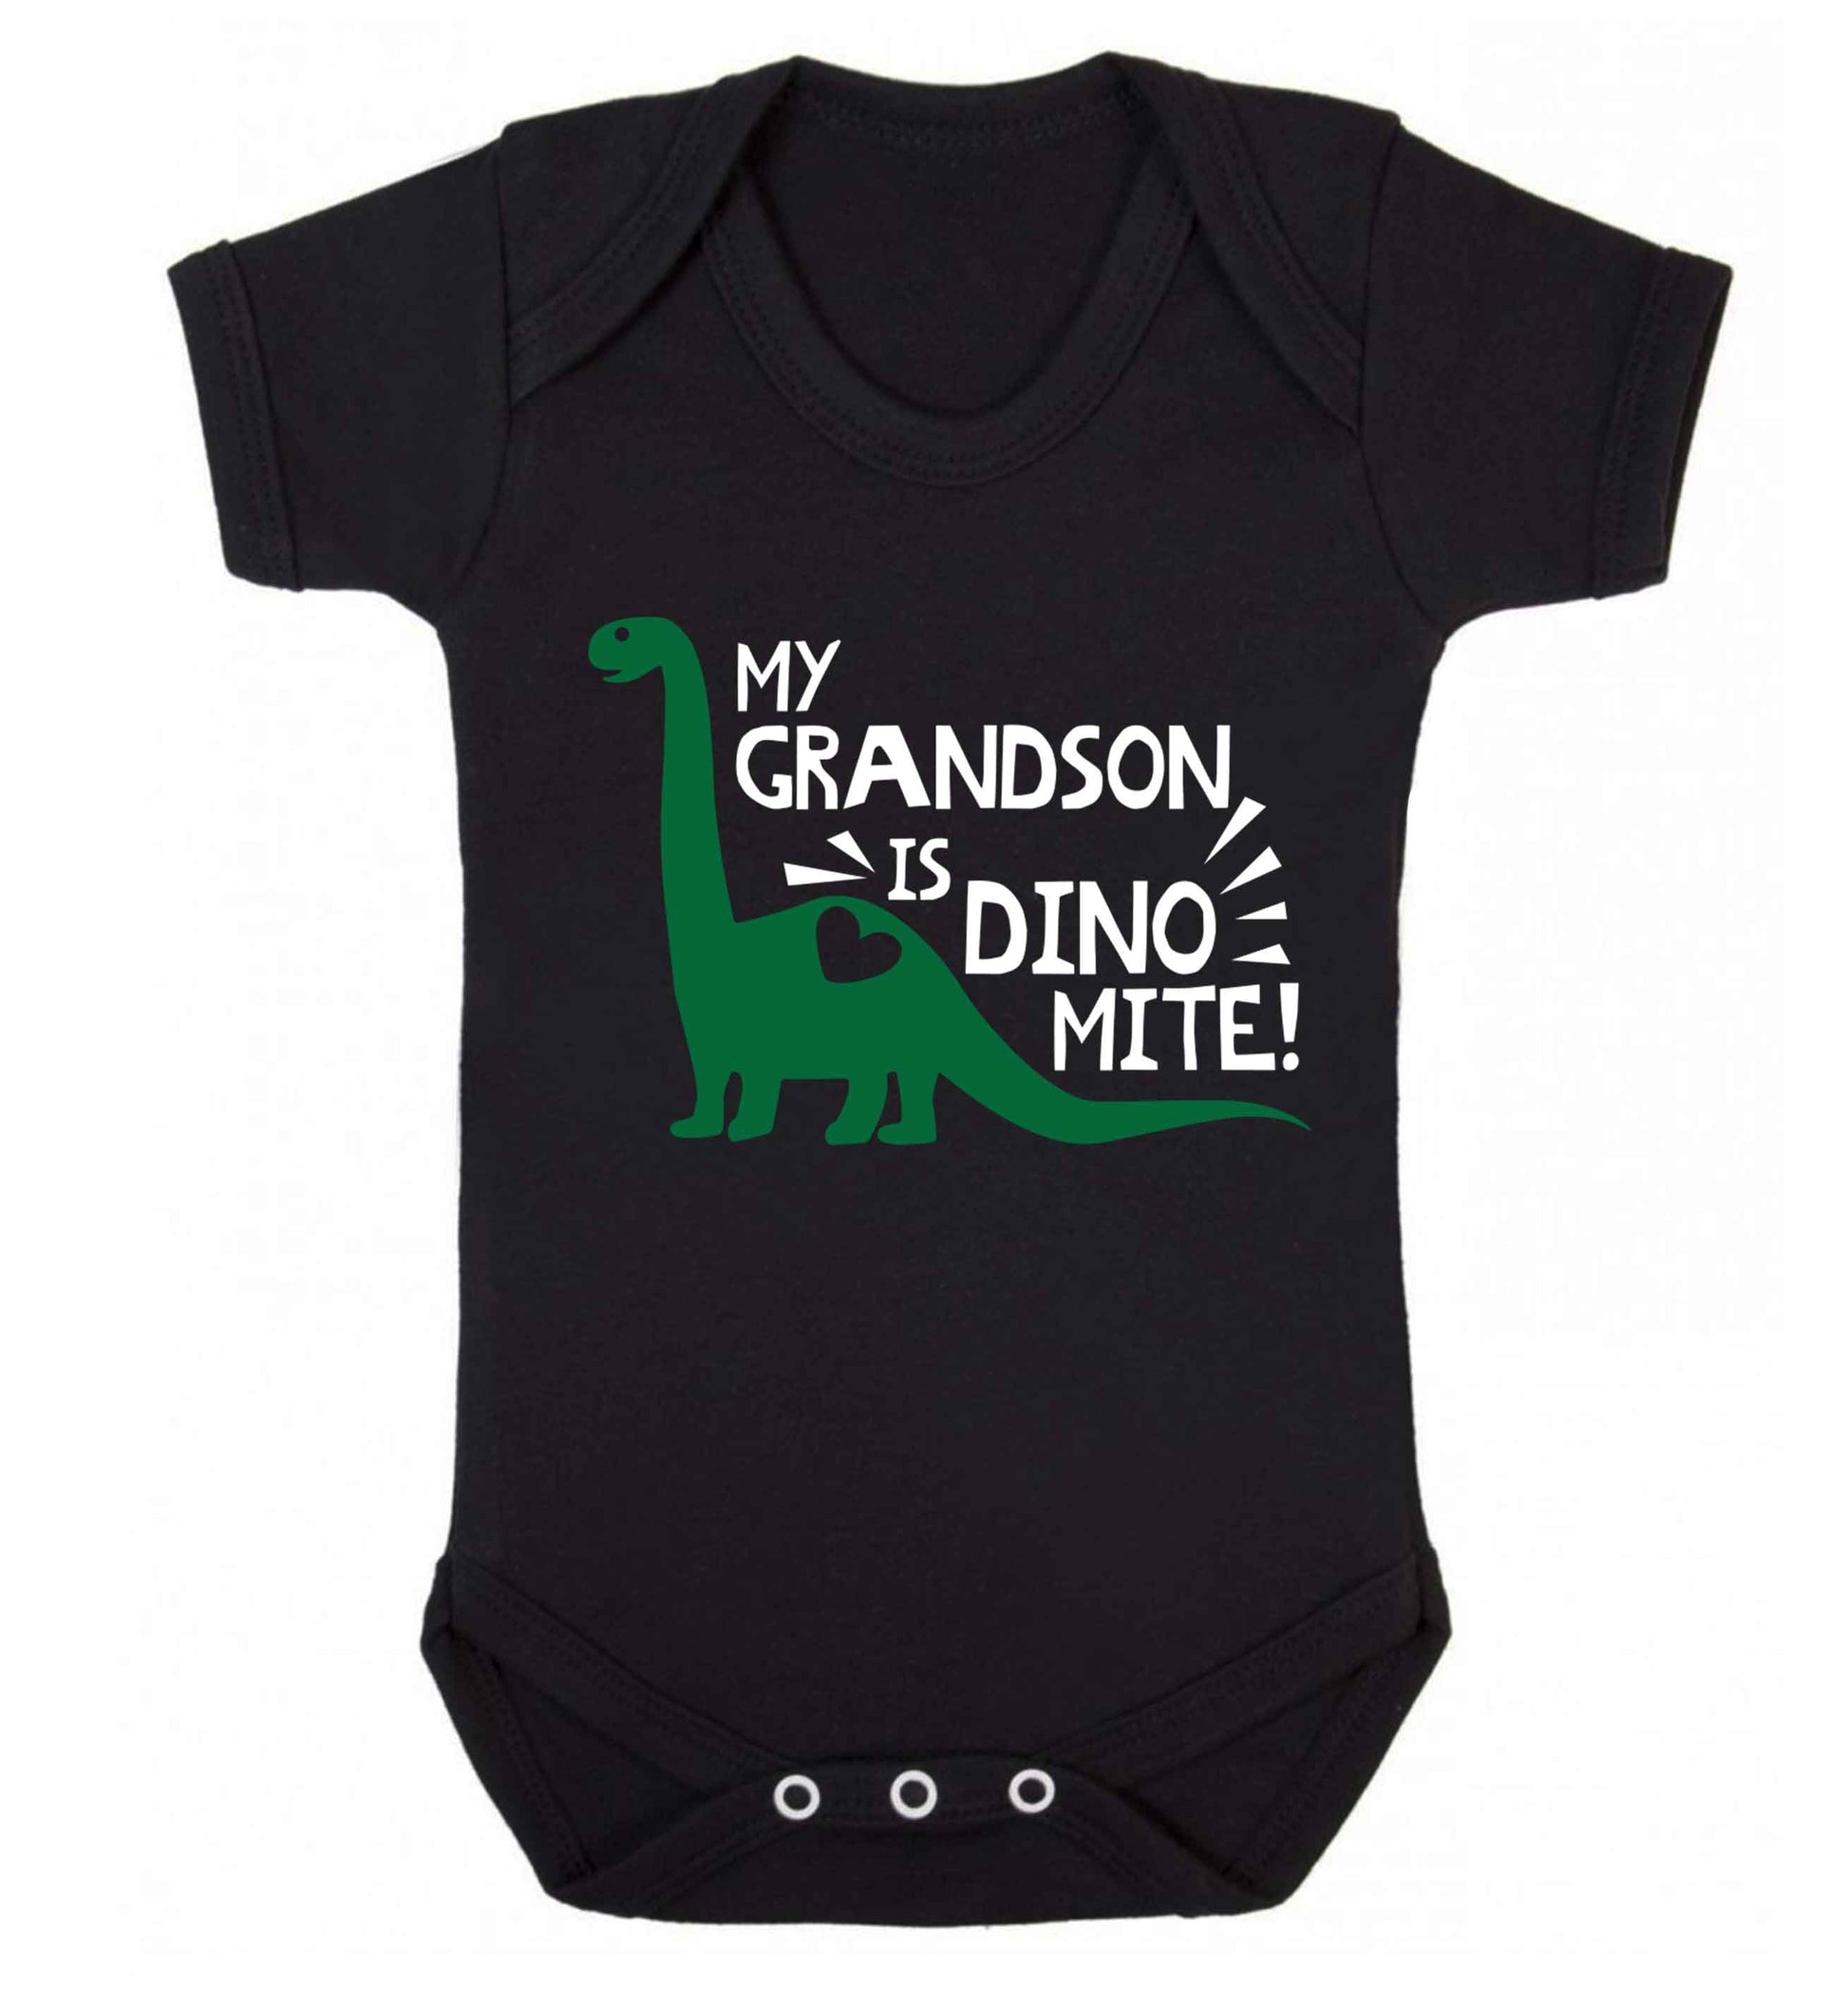 My grandson is dinomite! Baby Vest black 18-24 months